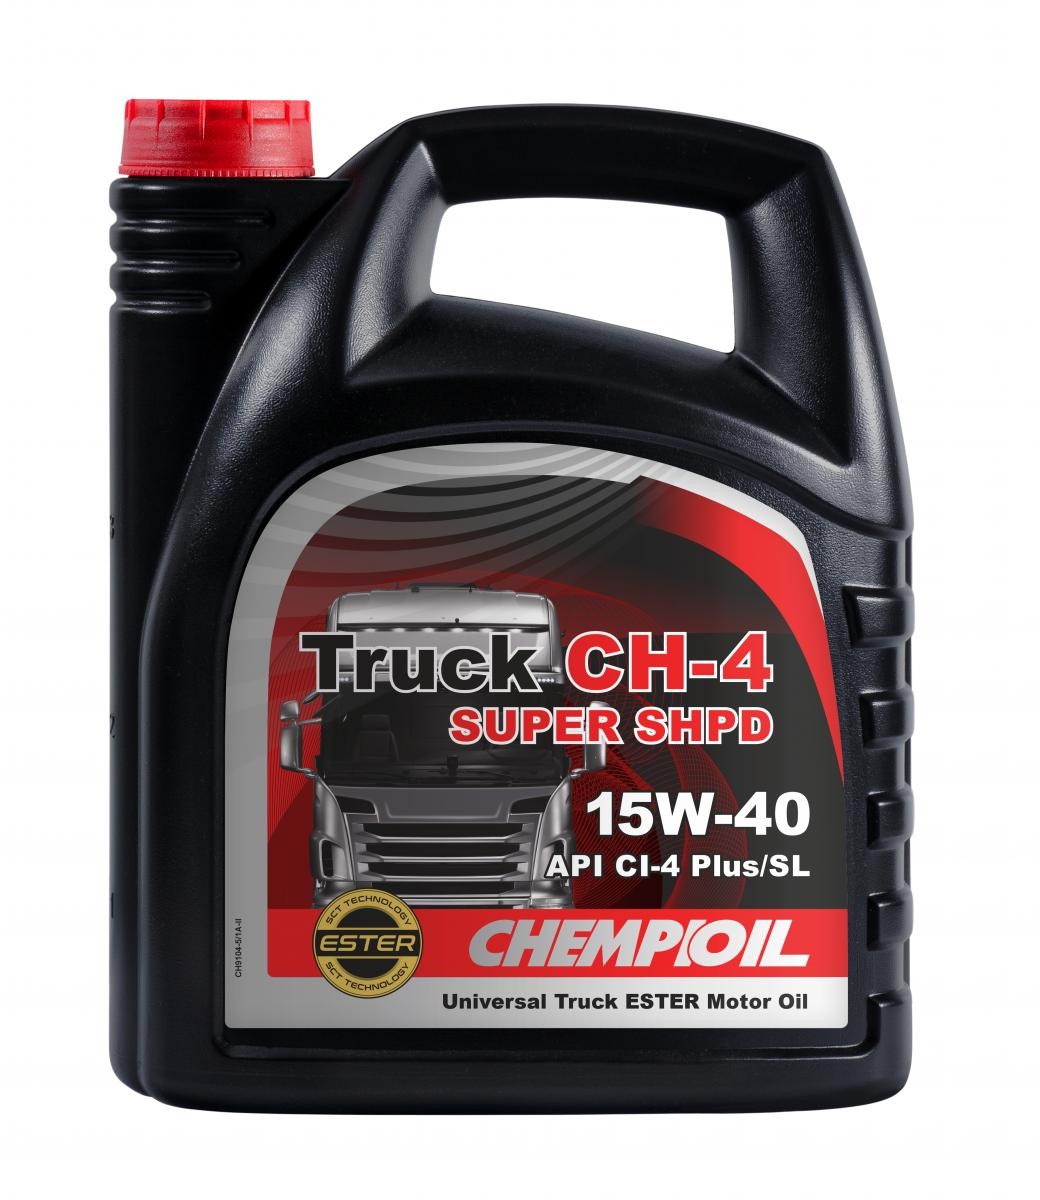 Comprare CH9104-5 CHEMPIOIL SHPD, Truck CH-4 Super 15W-40, 5l Olio motore CH9104-5 poco costoso